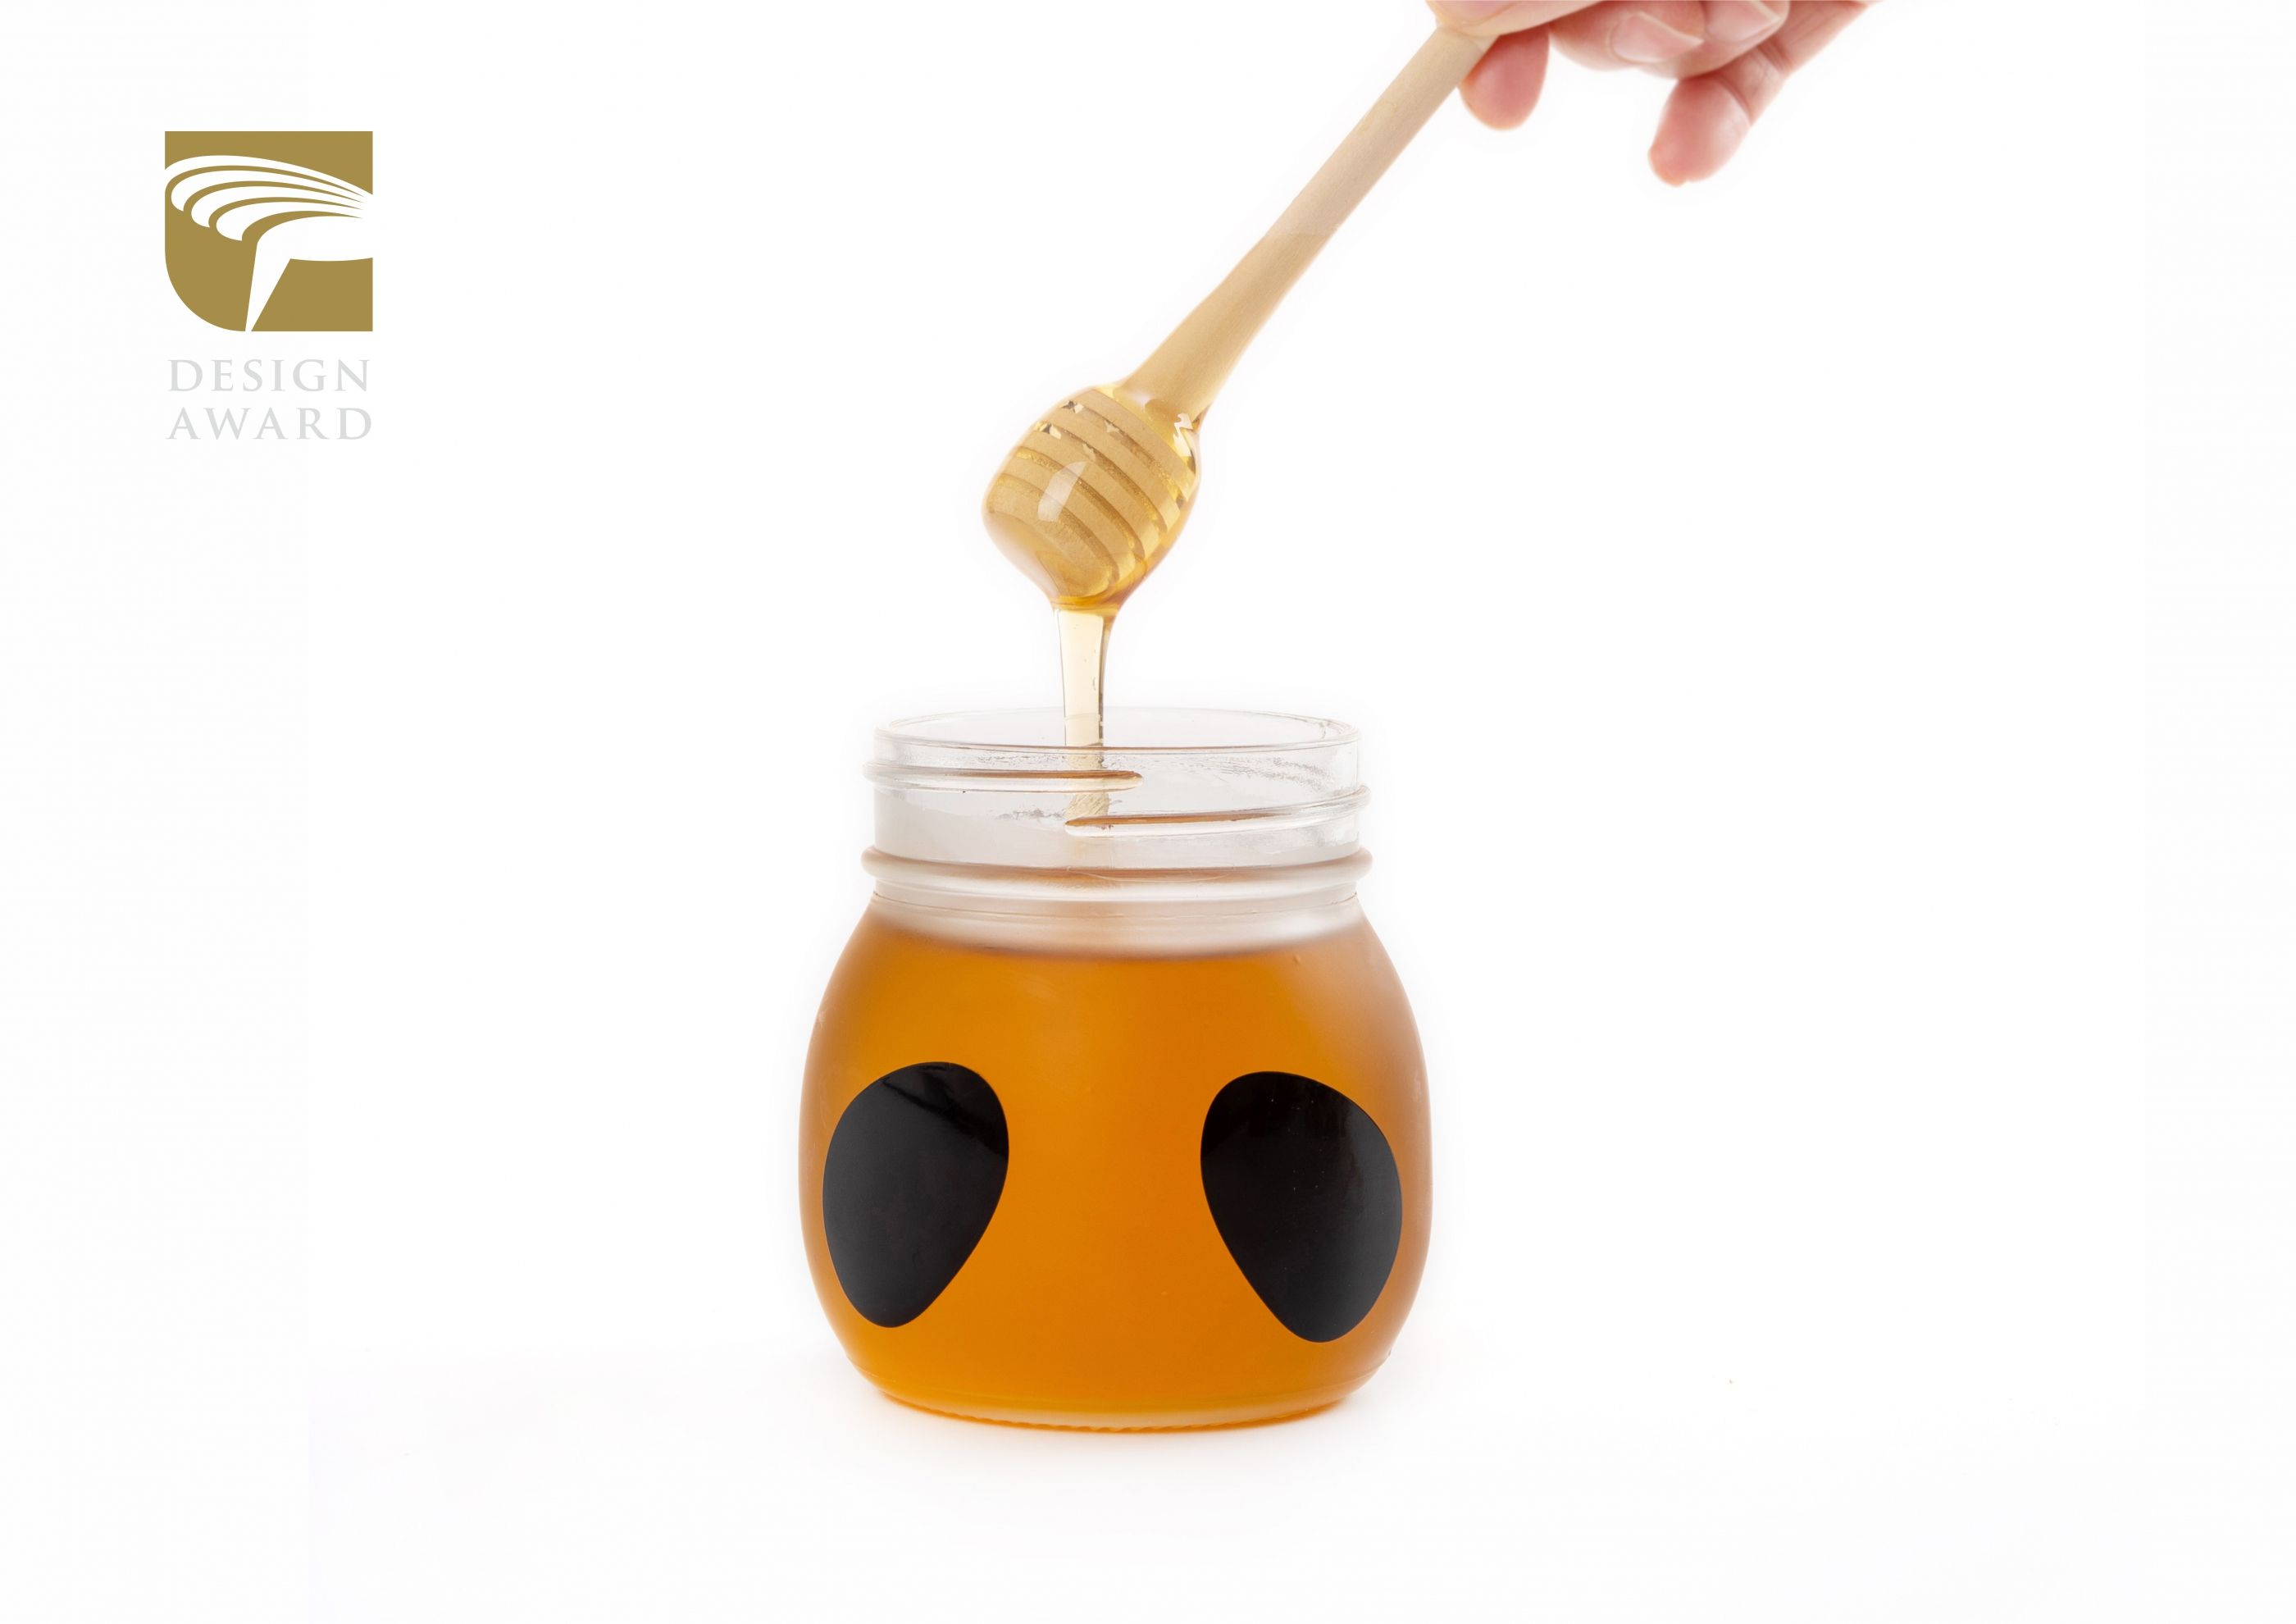 金点奖、金芦苇奖—熊猫蜂蜜包装设计 飞特网 会员原创食品包装设计